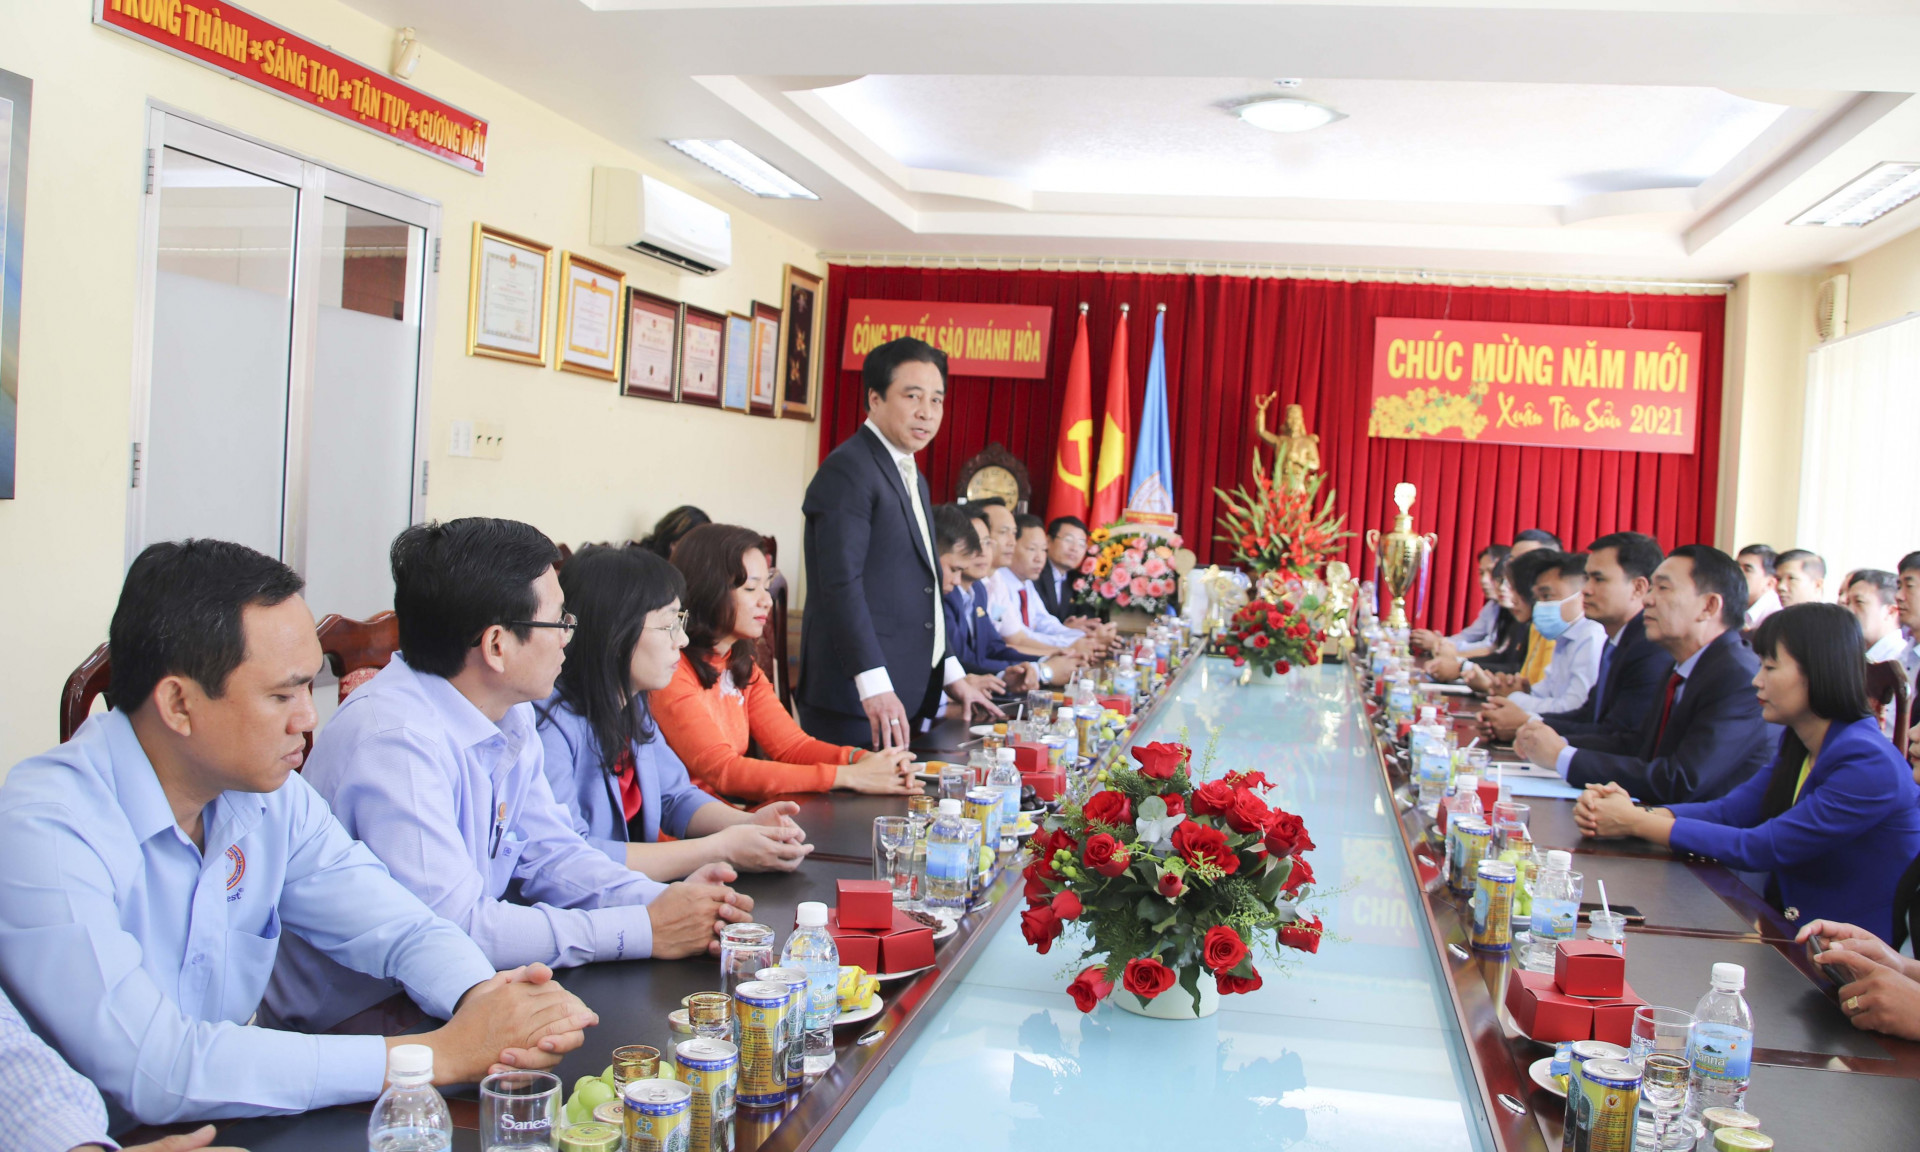 Ông Nguyễn Khắc Toàn phát biểu và chúc tết cán bộ, công nhân viên Công ty Yến sào Khánh Hòa